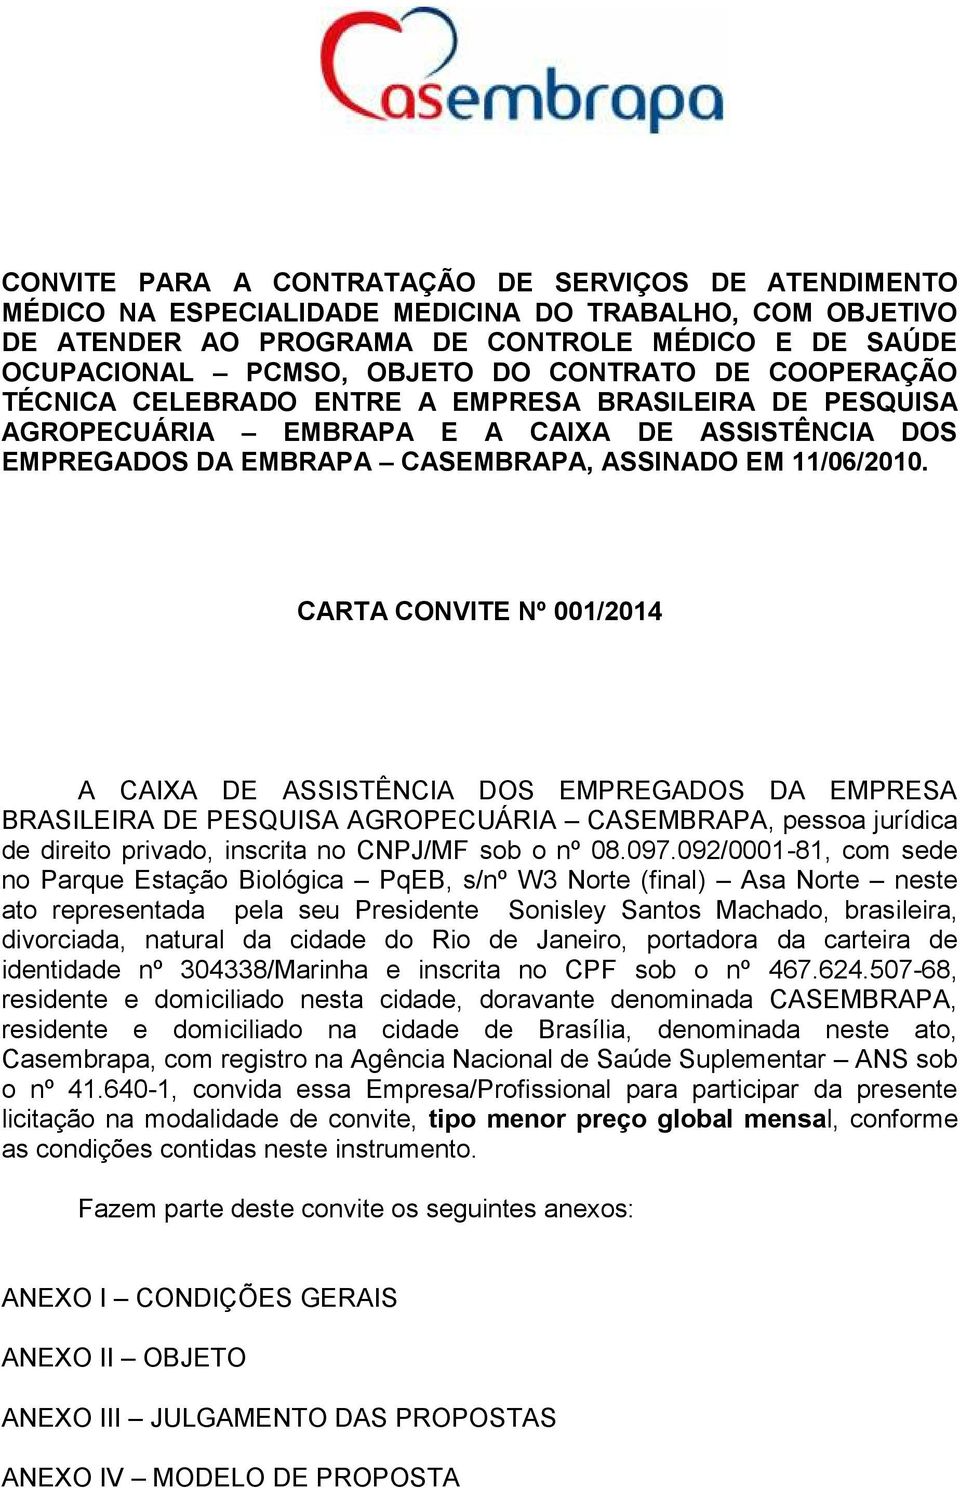 CARTA CONVITE Nº 001/2014 A CAIXA DE ASSISTÊNCIA DOS EMPREGADOS DA EMPRESA BRASILEIRA DE PESQUISA AGROPECUÁRIA CASEMBRAPA, pessoa jurídica de direito privado, inscrita no CNPJ/MF sob o nº 08.097.